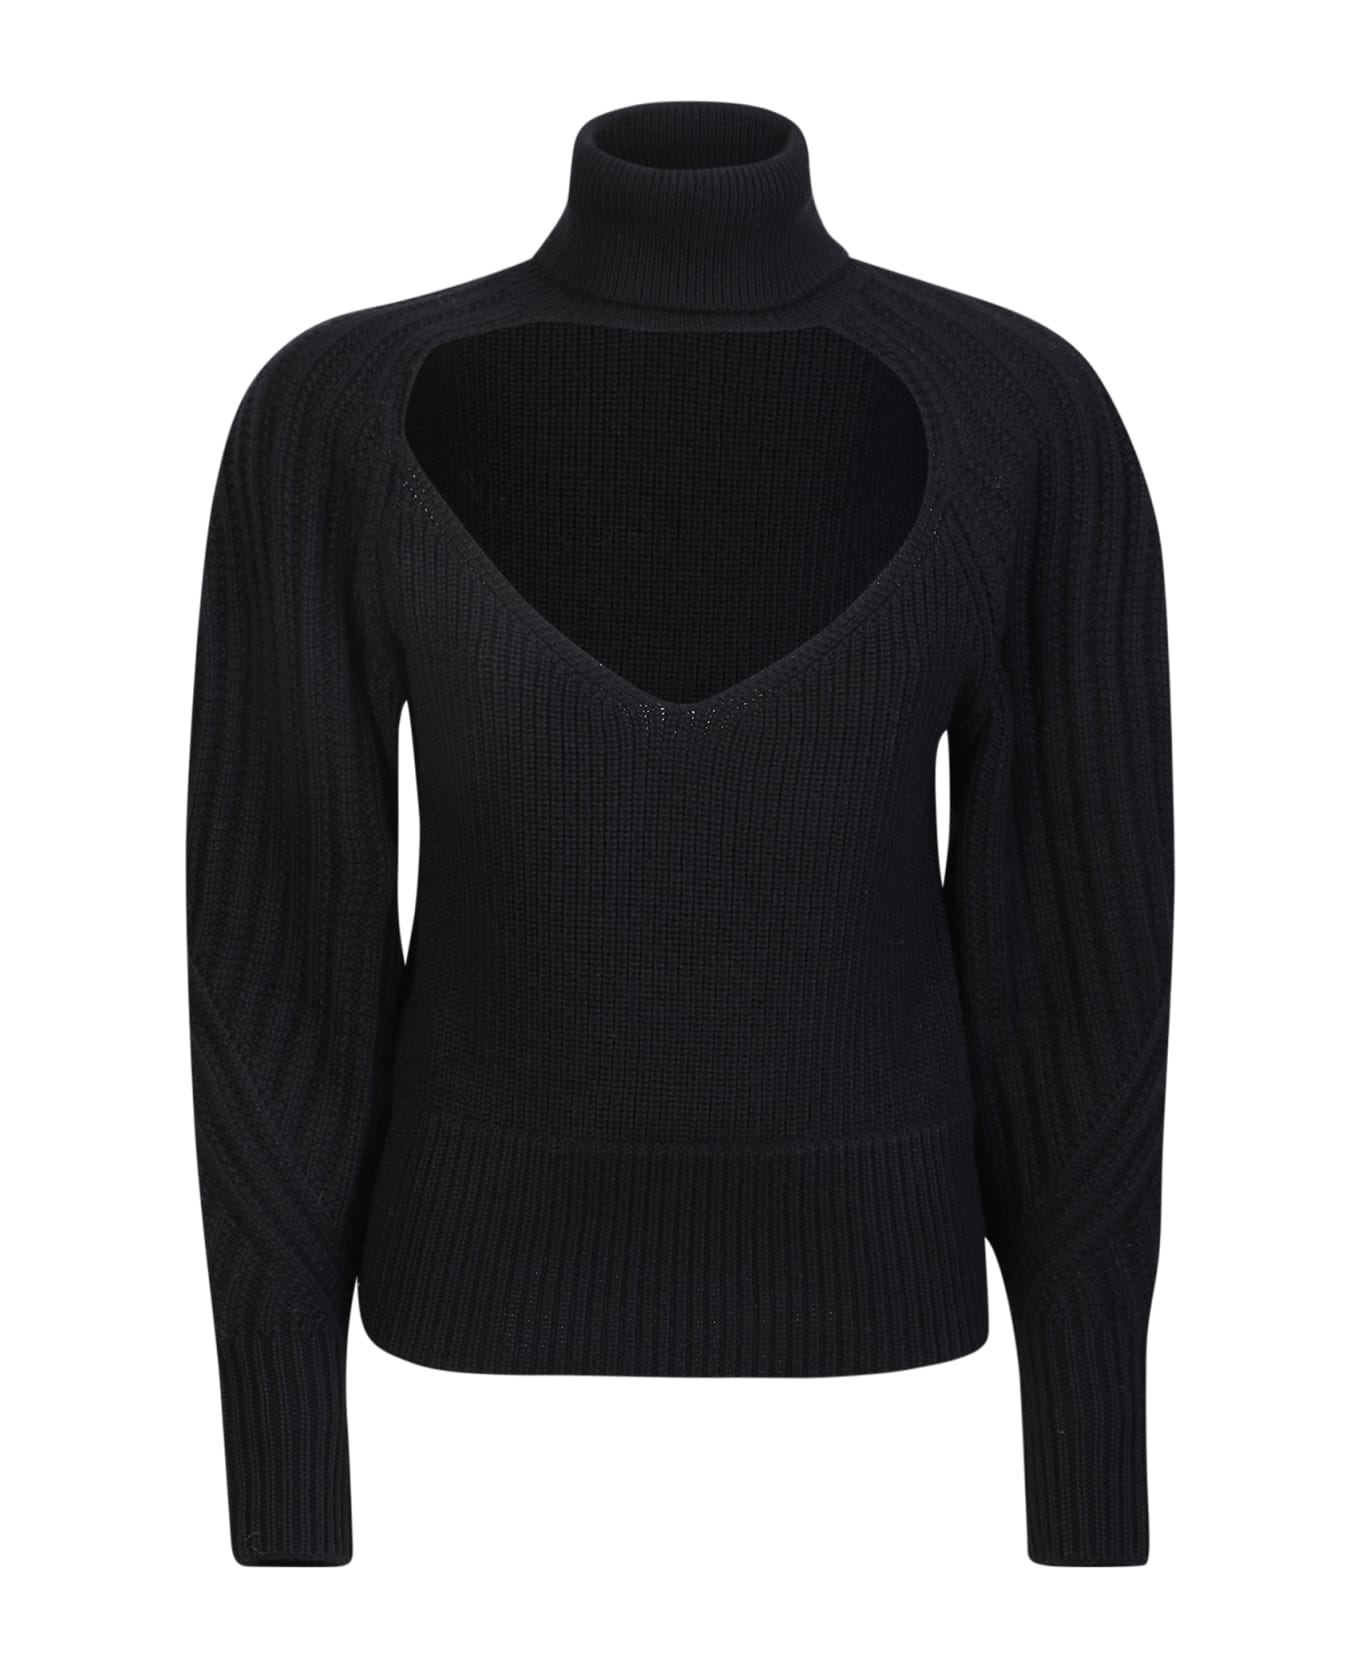 IRO Heart Neckline Wool Sweater In Black - Black ニットウェア